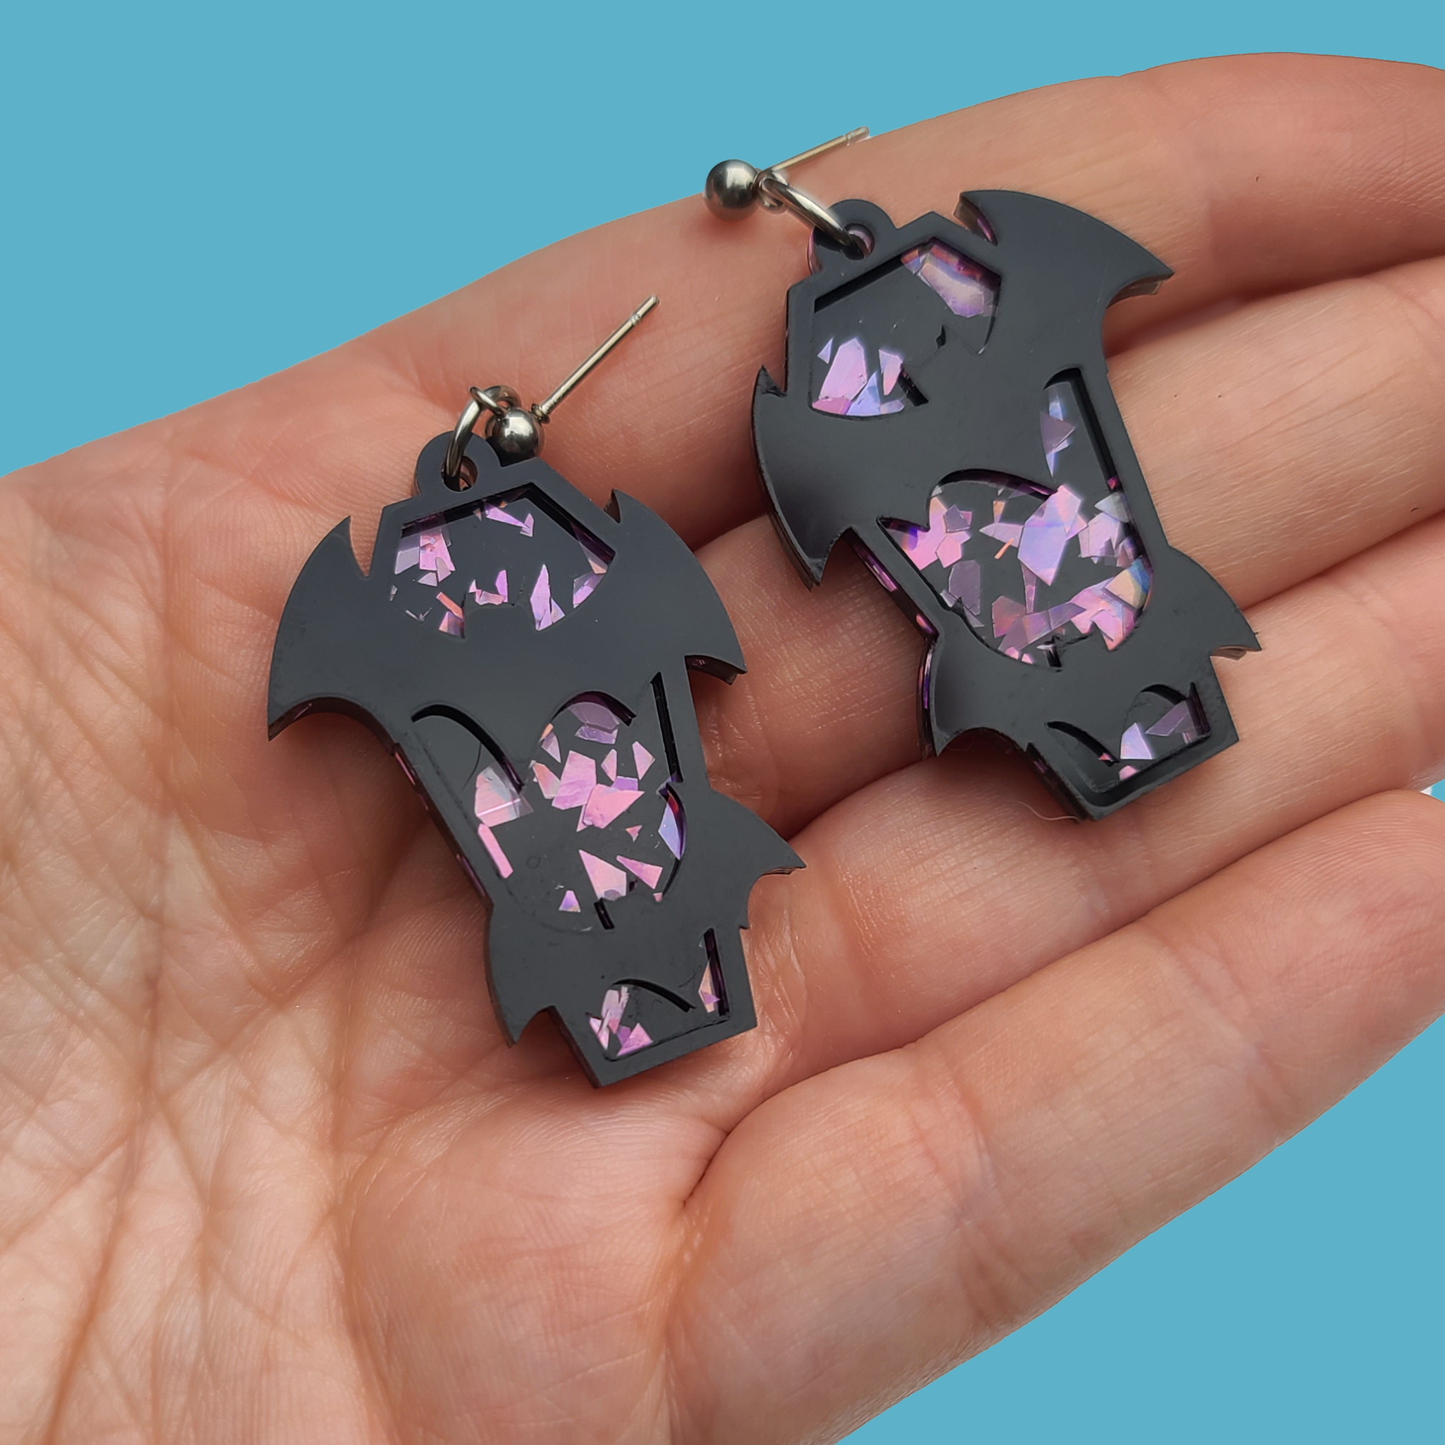 Bats on Coffin with purple chunky glitter back - Earrings - Laser Cut